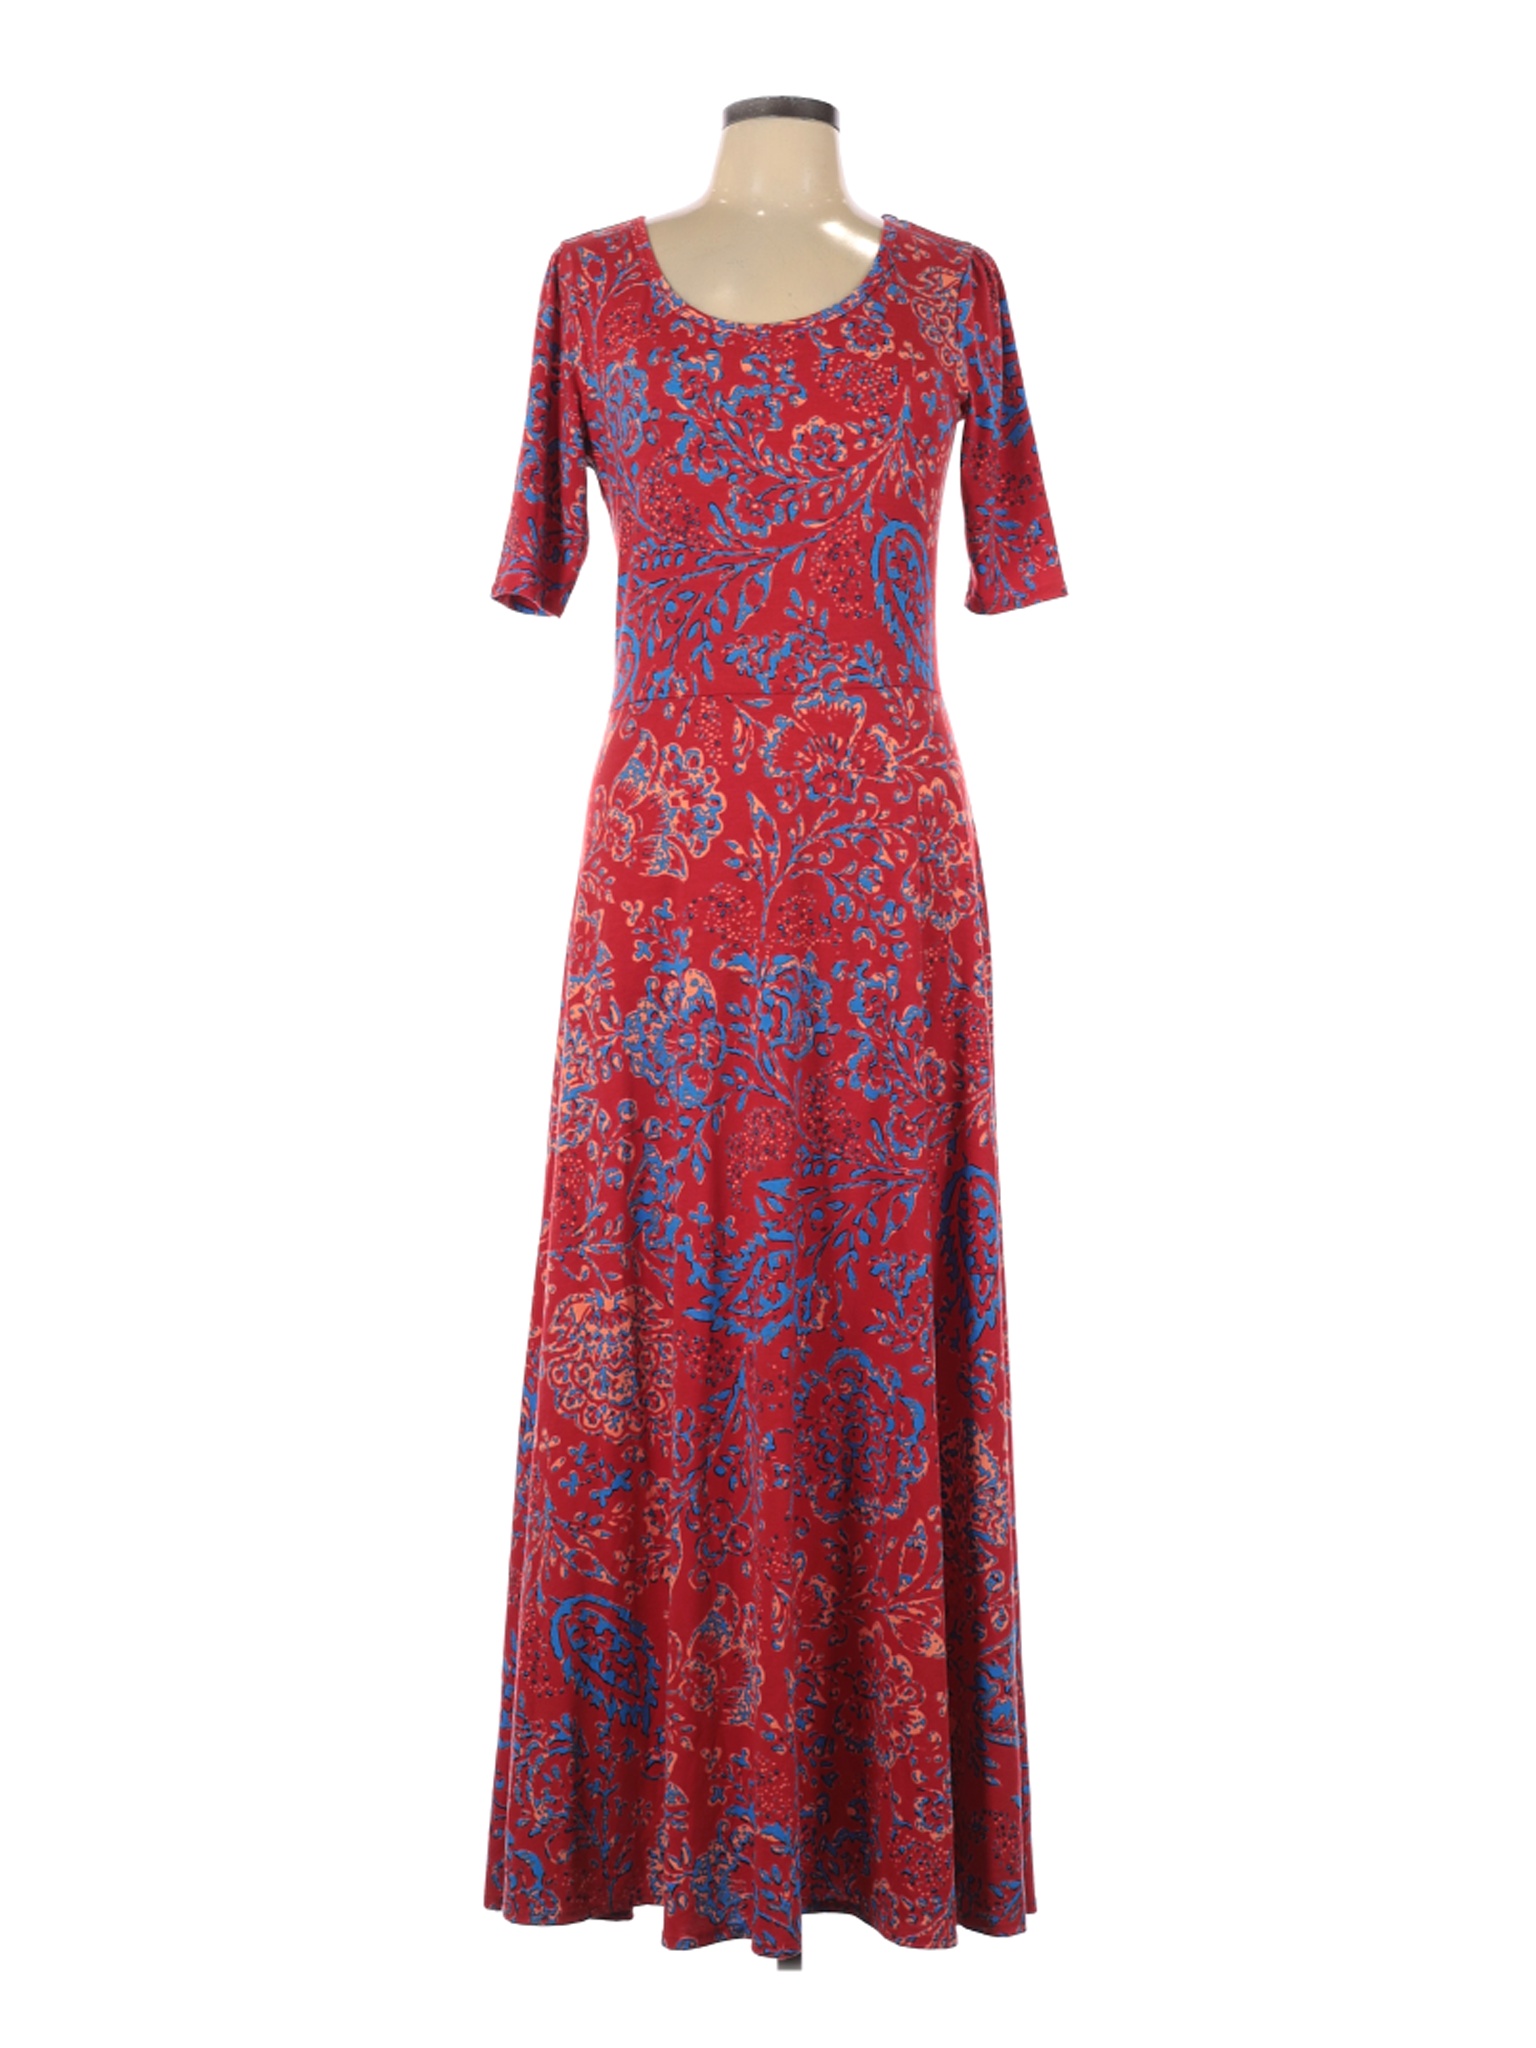 Lularoe Women Red Casual Dress L | eBay